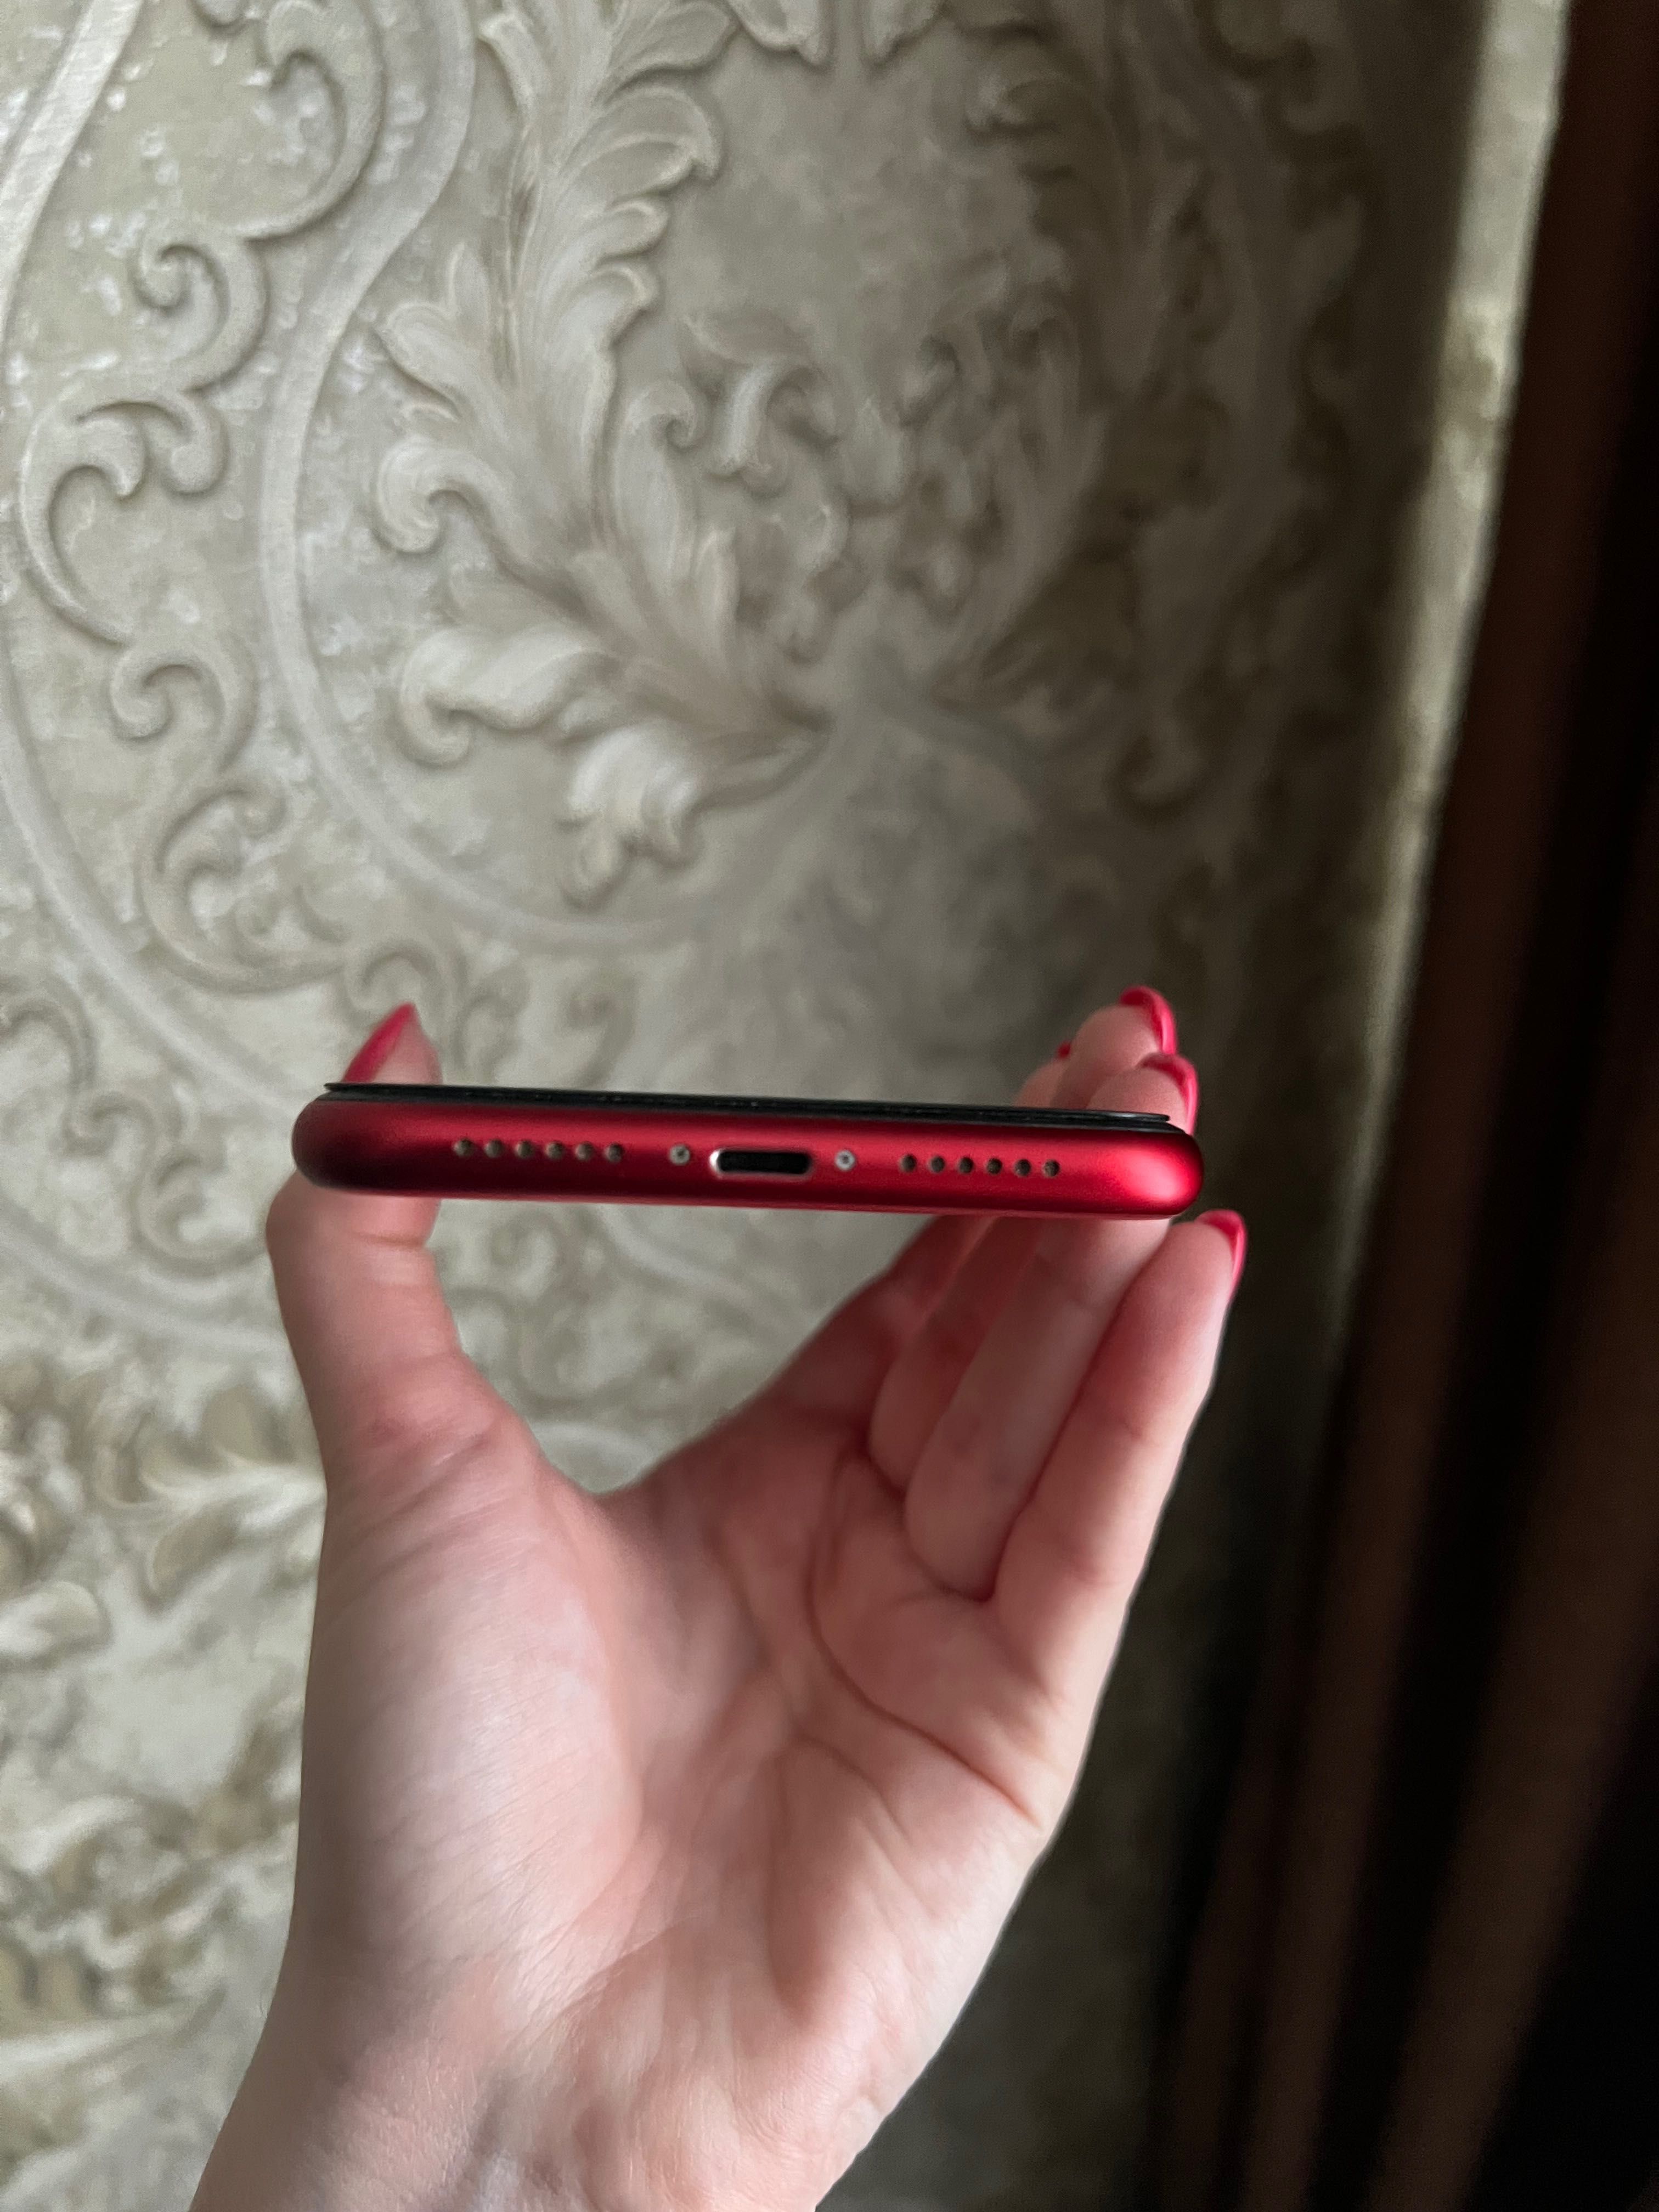 IPhone 11(червоний) без гарантії